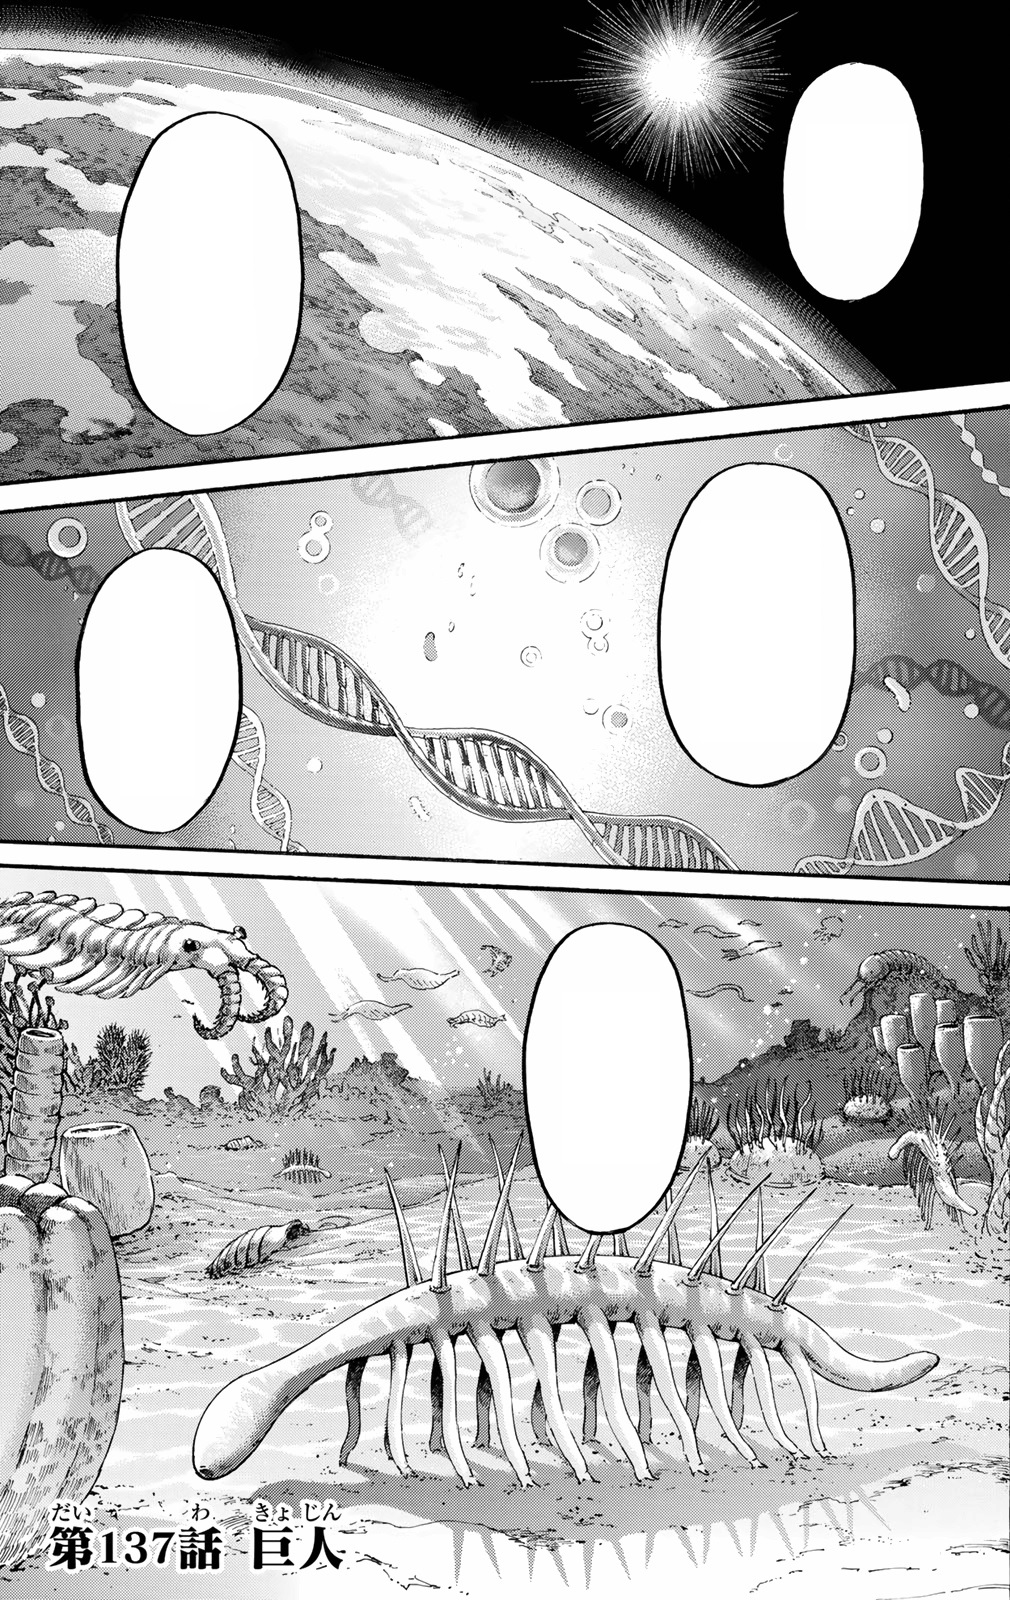 Shingeki no Kyojin: Final do capítulo 137 é explosivo